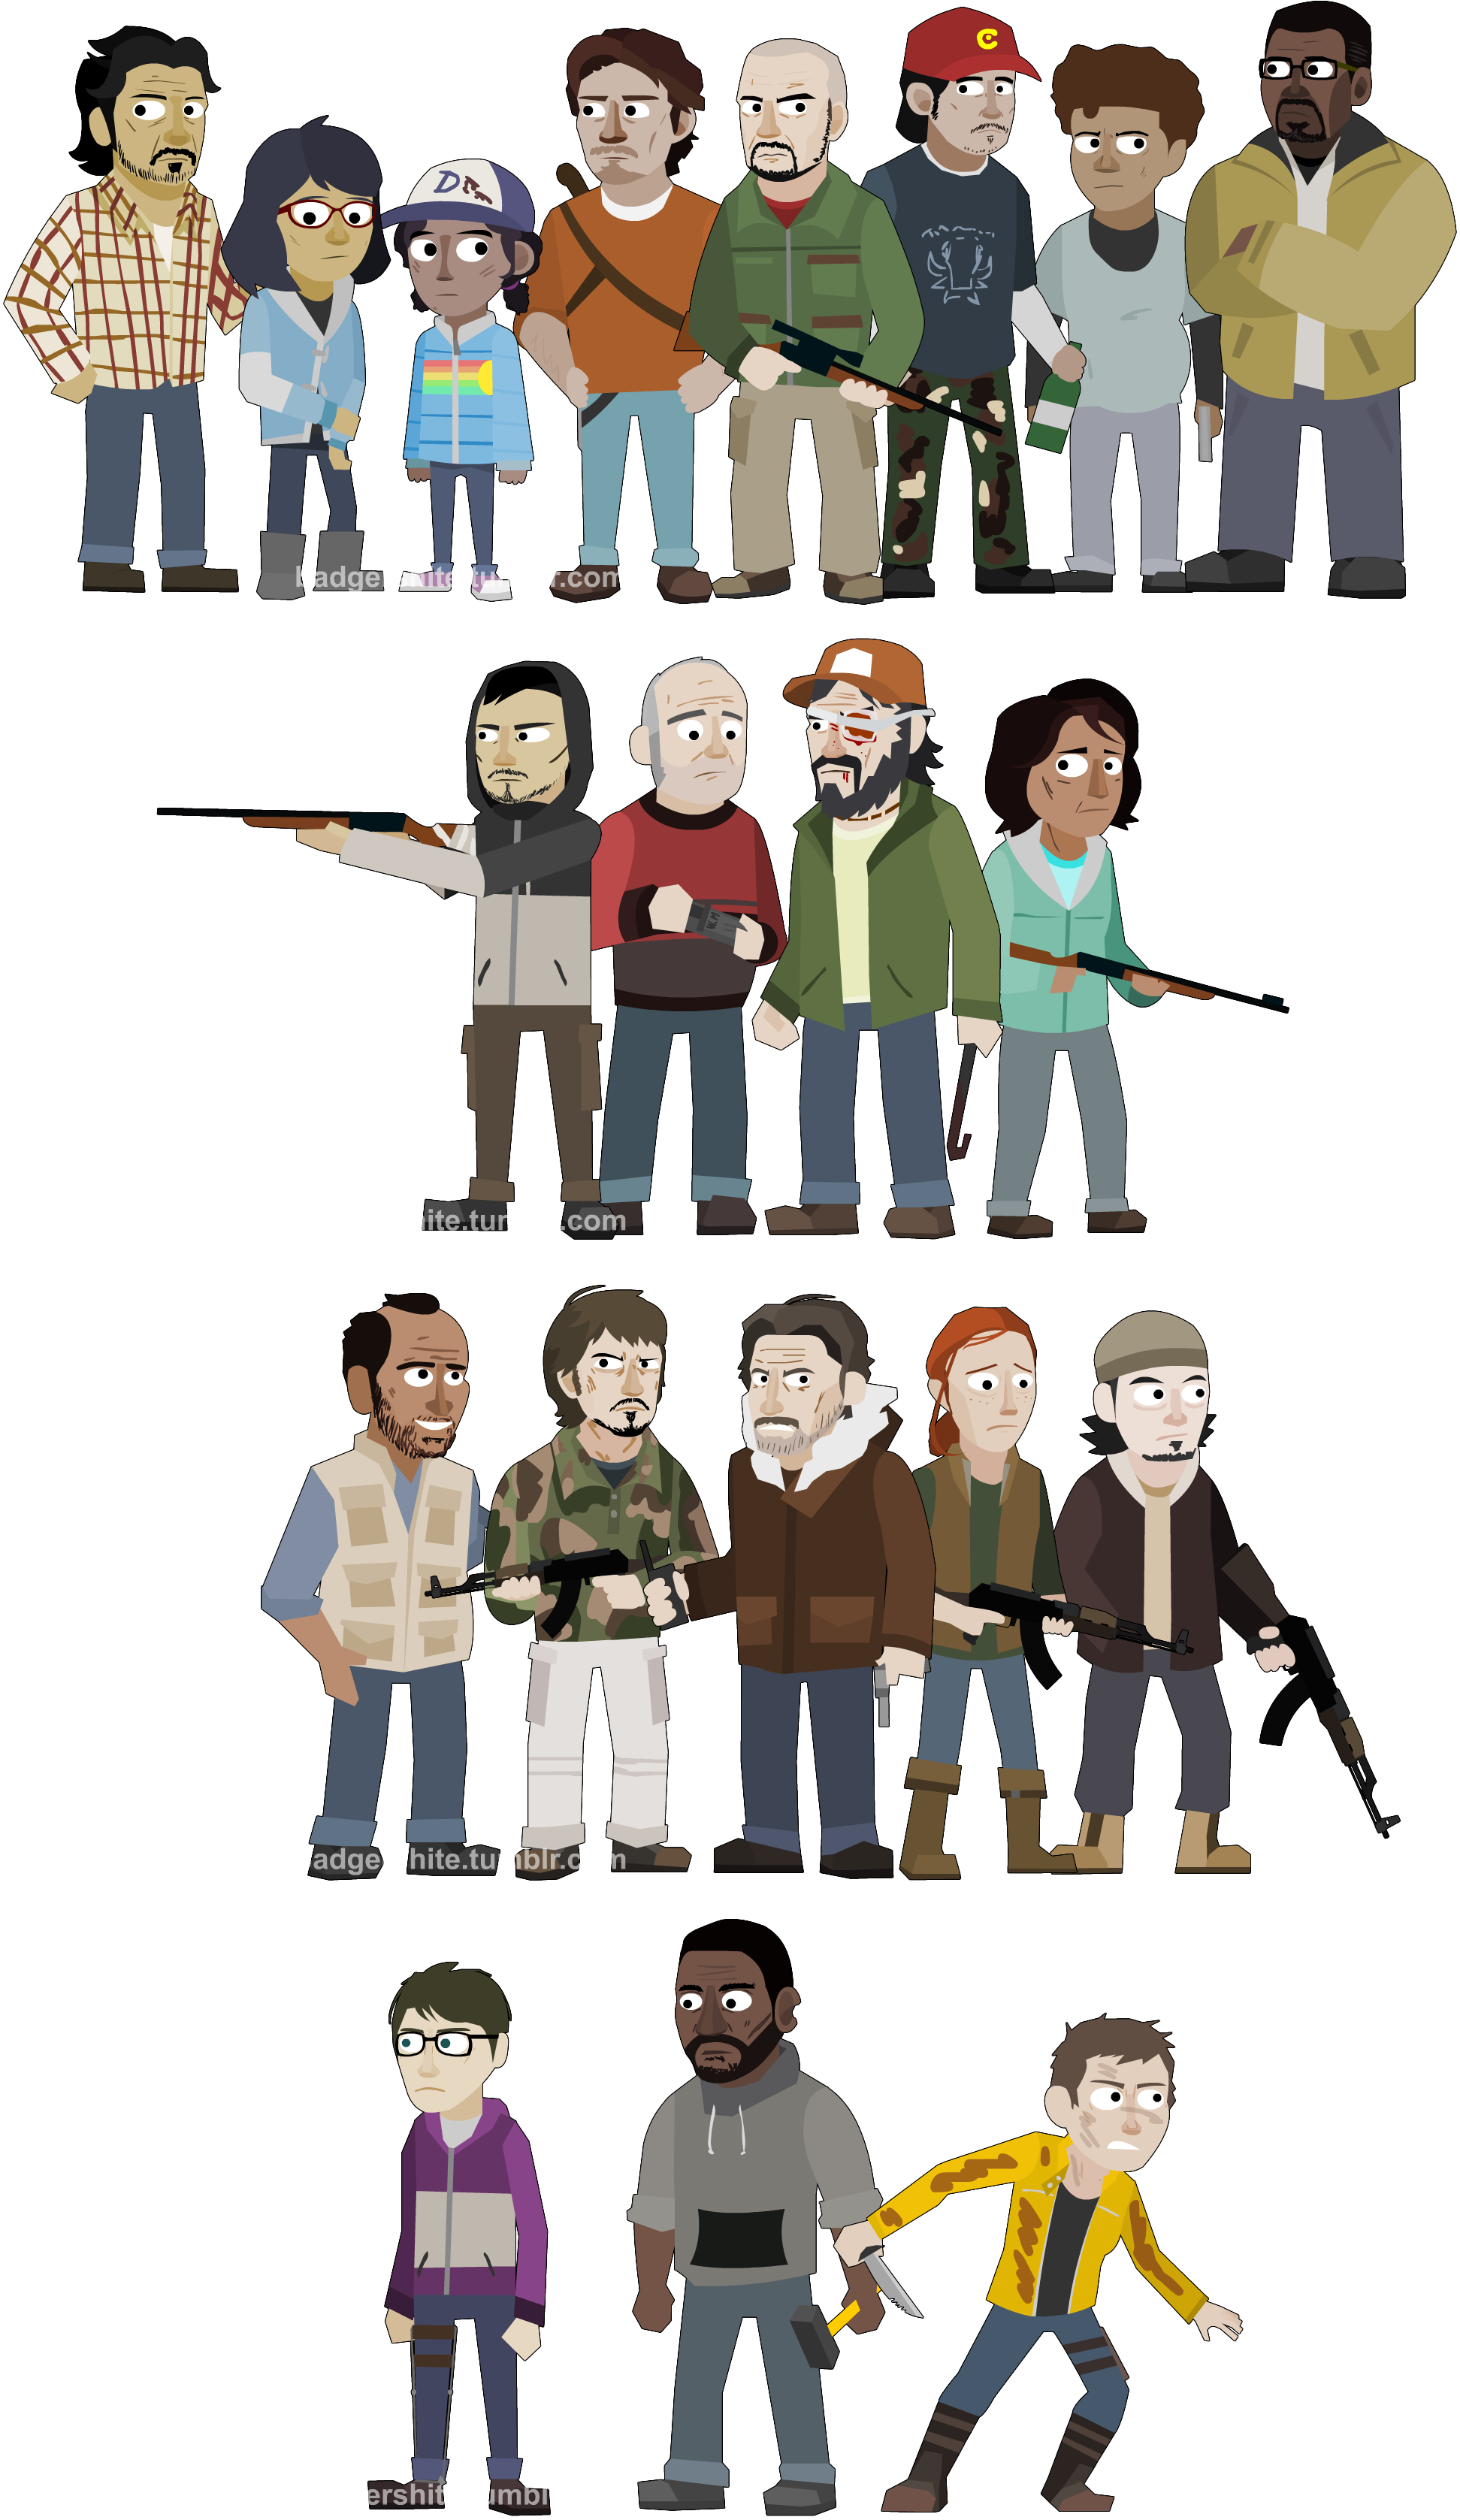 The Walking Dead Season 2 [Ongoing] by jakest123 on DeviantArt